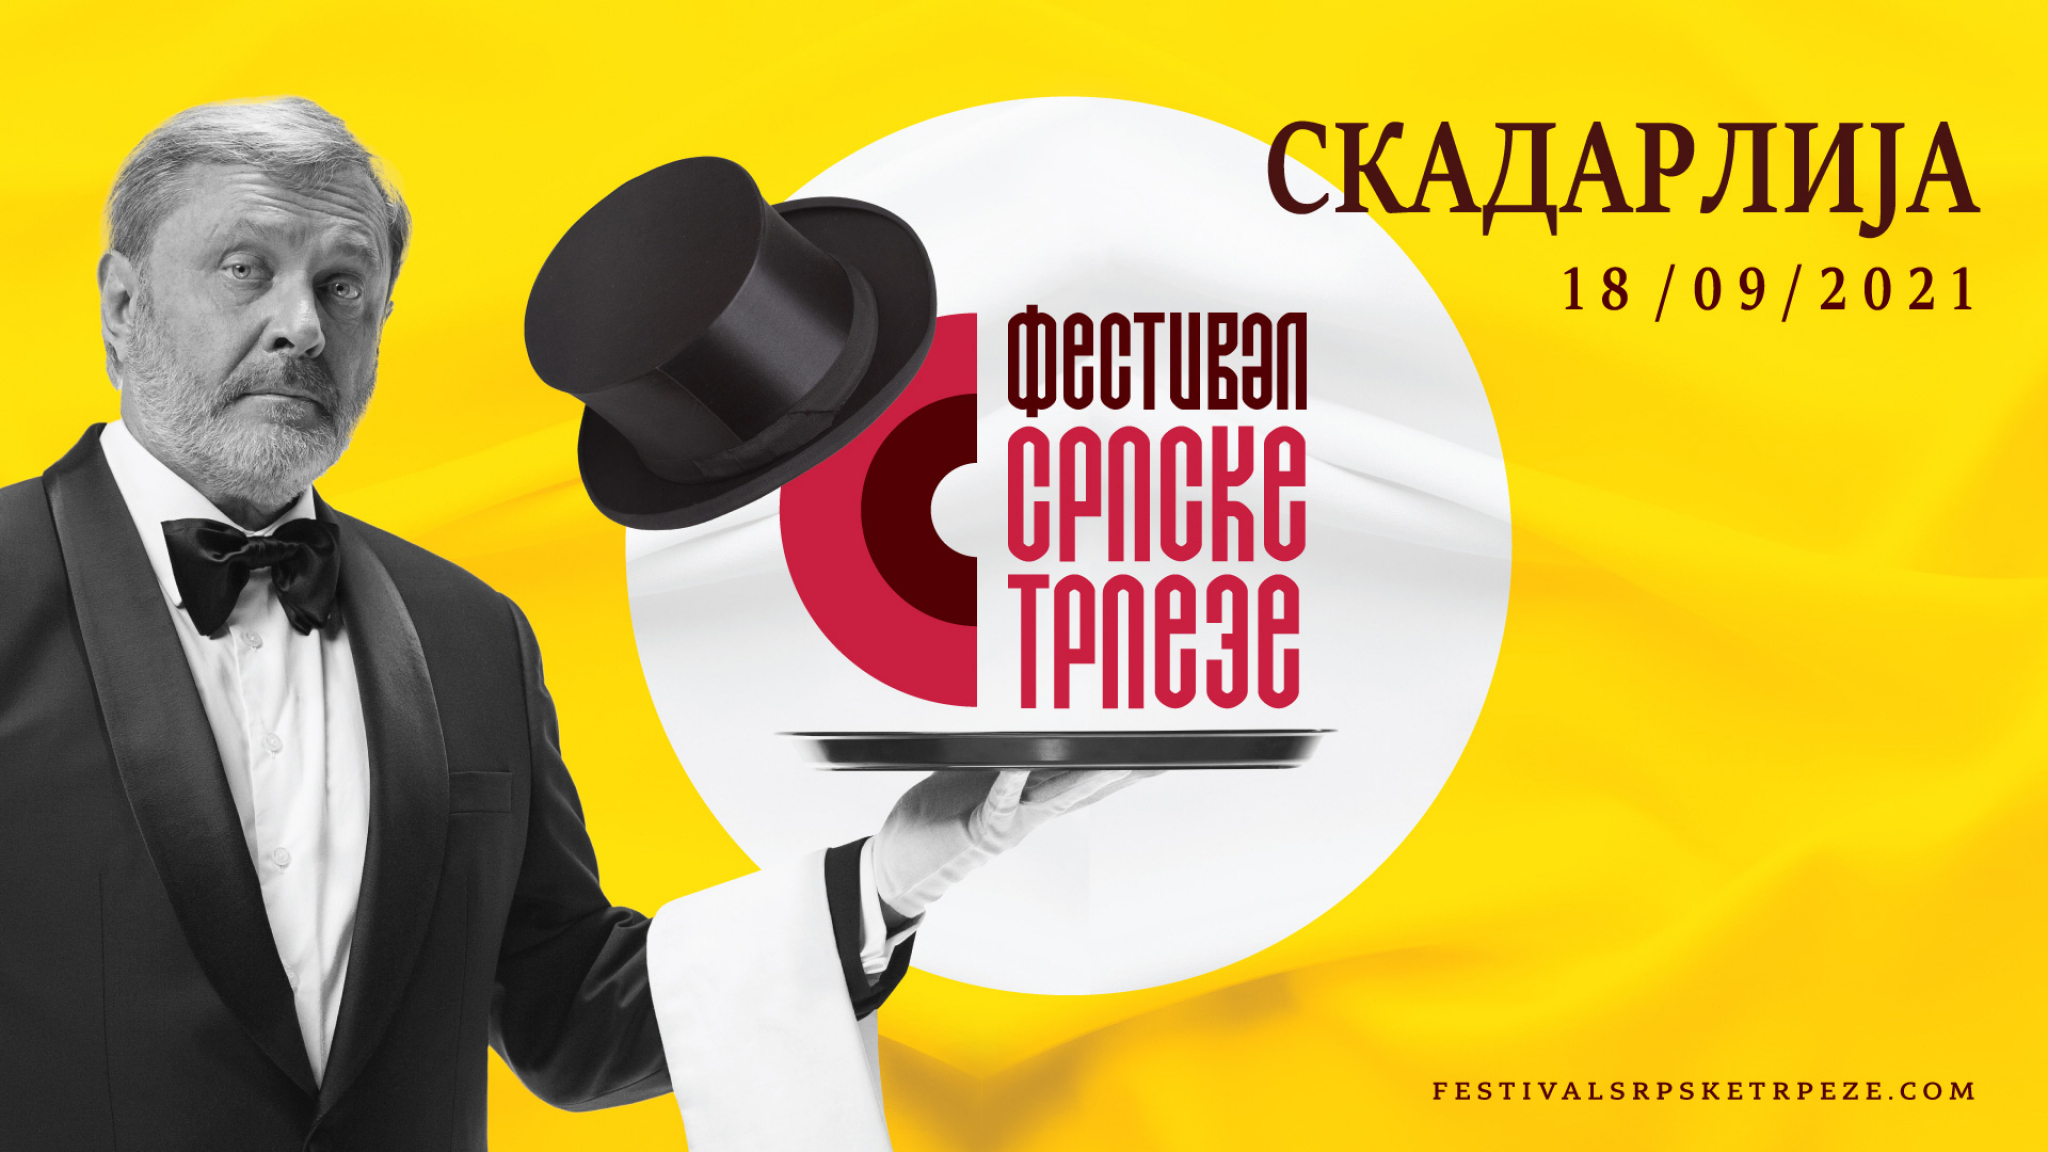 FESTIVAL SRPSKE TRPEZE SUTRA U SKADARLIJI Jedinstvena prilika da probate specijalitete iz svih krajeva Srbije